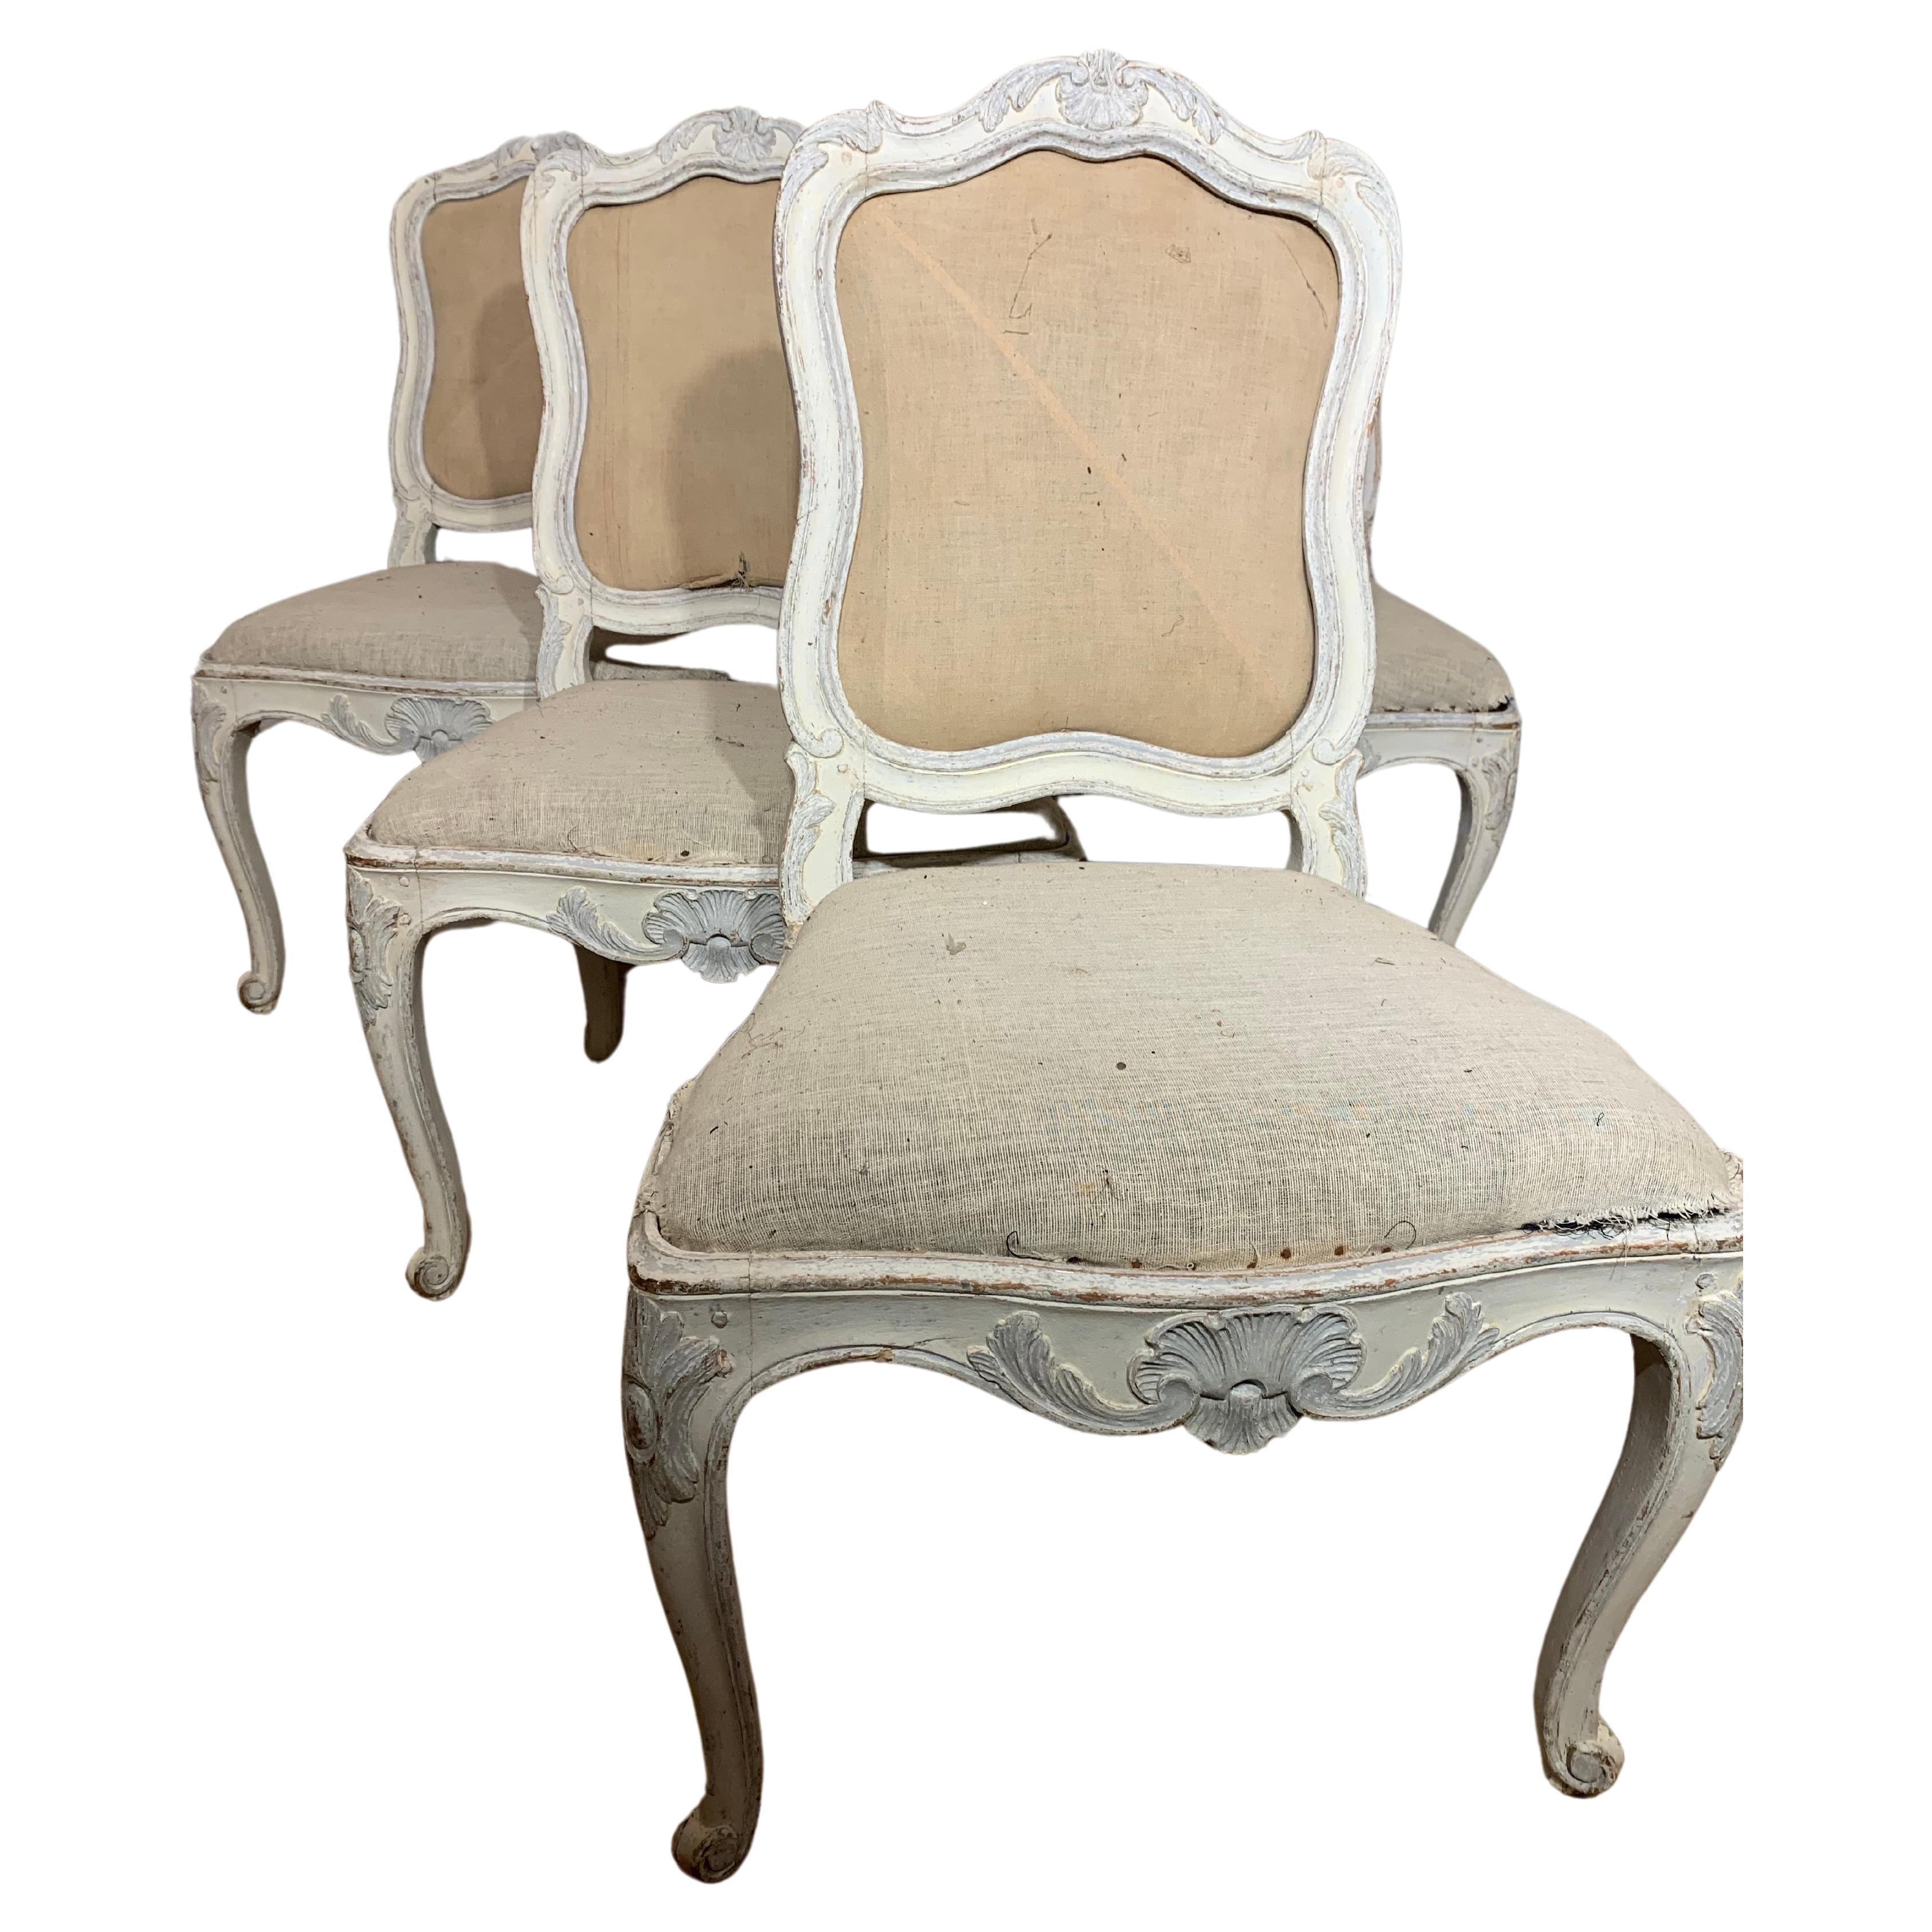 Quatre chaises fabriquées en Suède dans le style rococo vers 1830. La première couleur secondaire a été enlevée et ce qui reste, c'est la deuxième couleur secondaire. Sous la couleur secondaire se trouve une couleur originale gris foncé. Les chaises